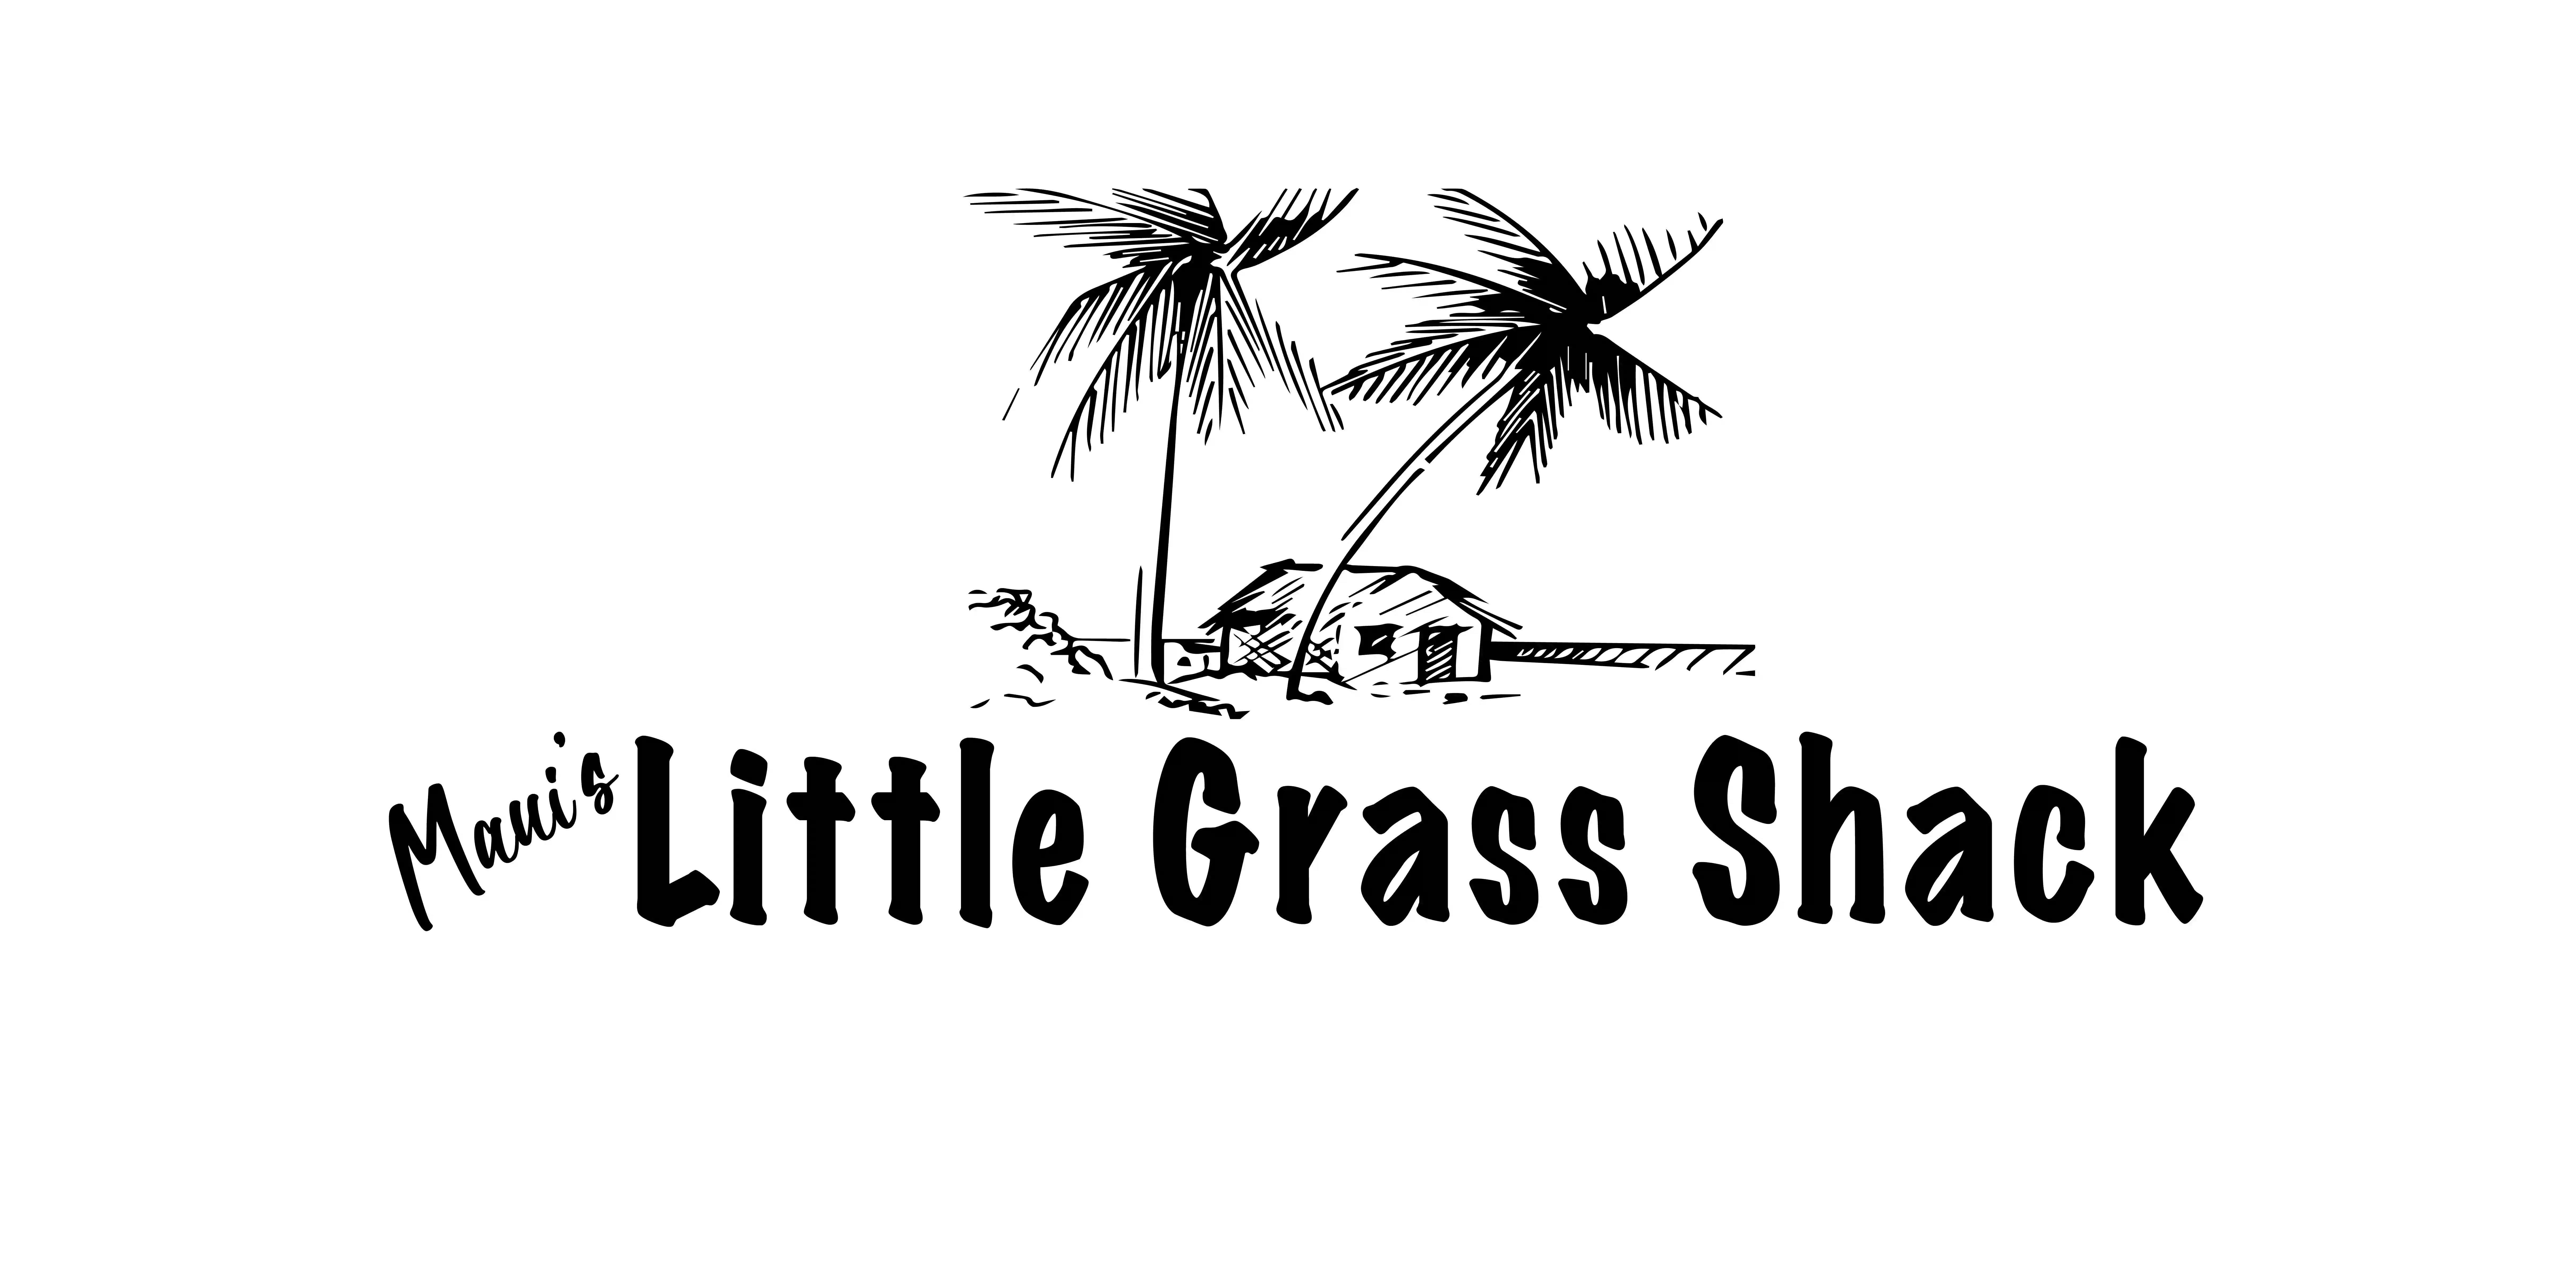 Maui's Little Grass Shack